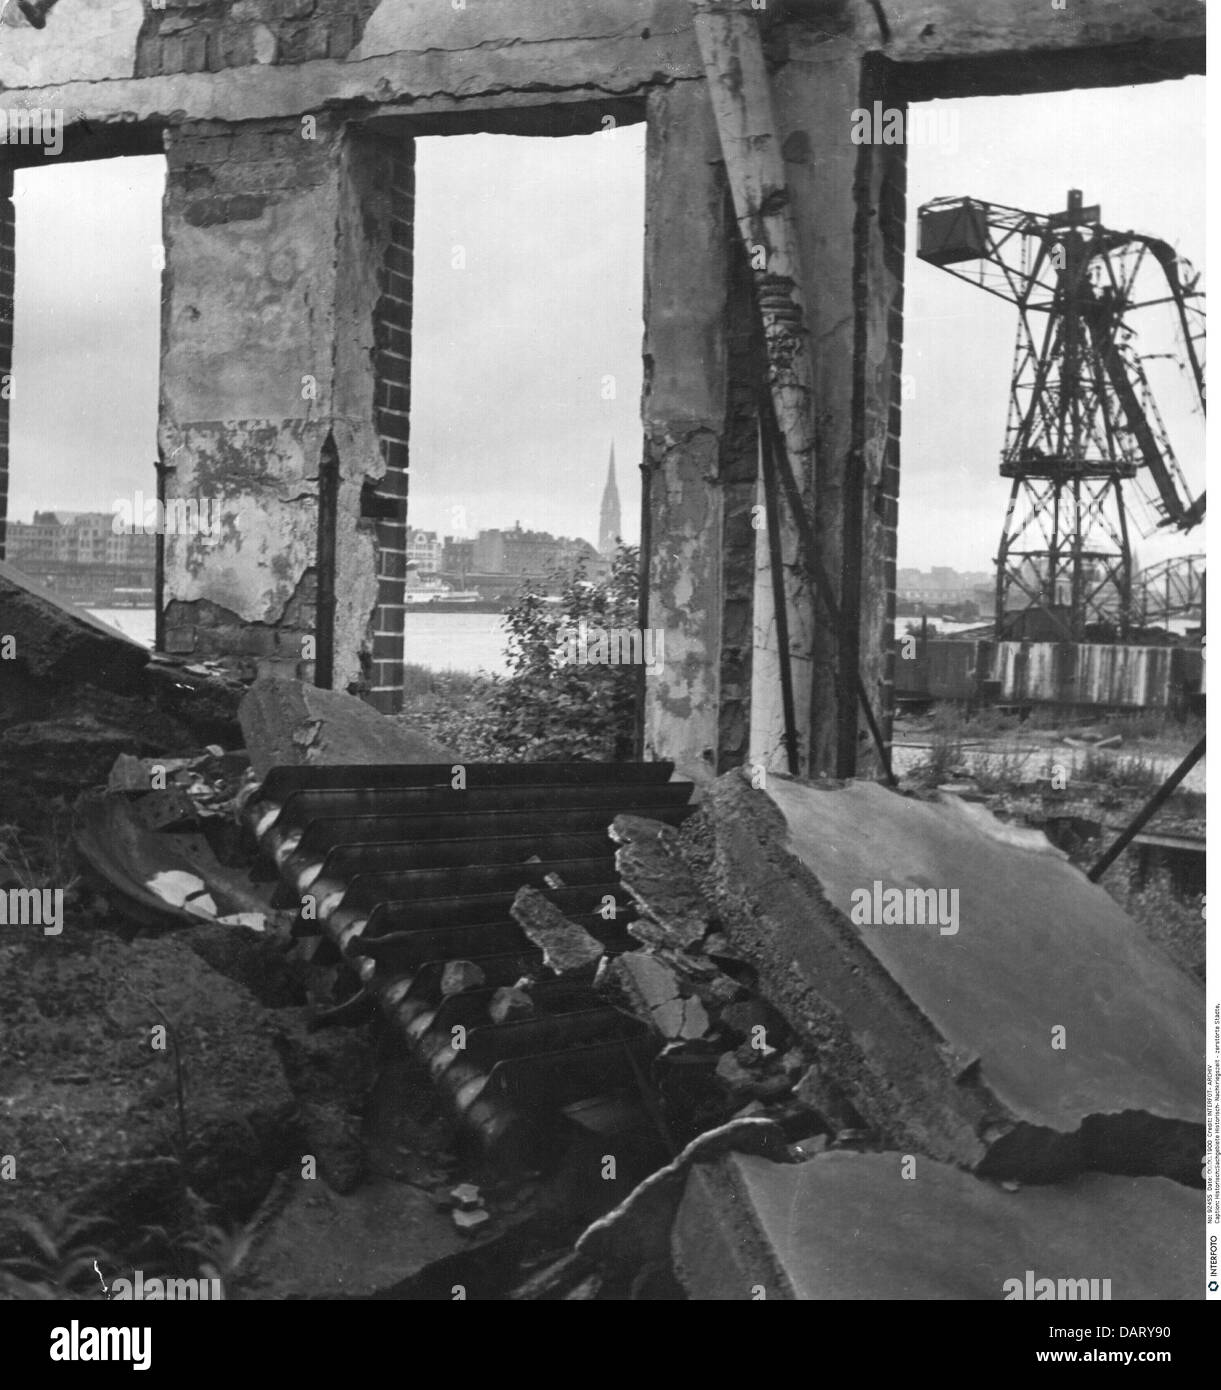 Nachkriegszeit, zerstörte Städte, Hamburg, Deutschland, Ruinen am Hafen, um 1946, zusätzliche-Rechte-Clearences-nicht vorhanden Stockfoto